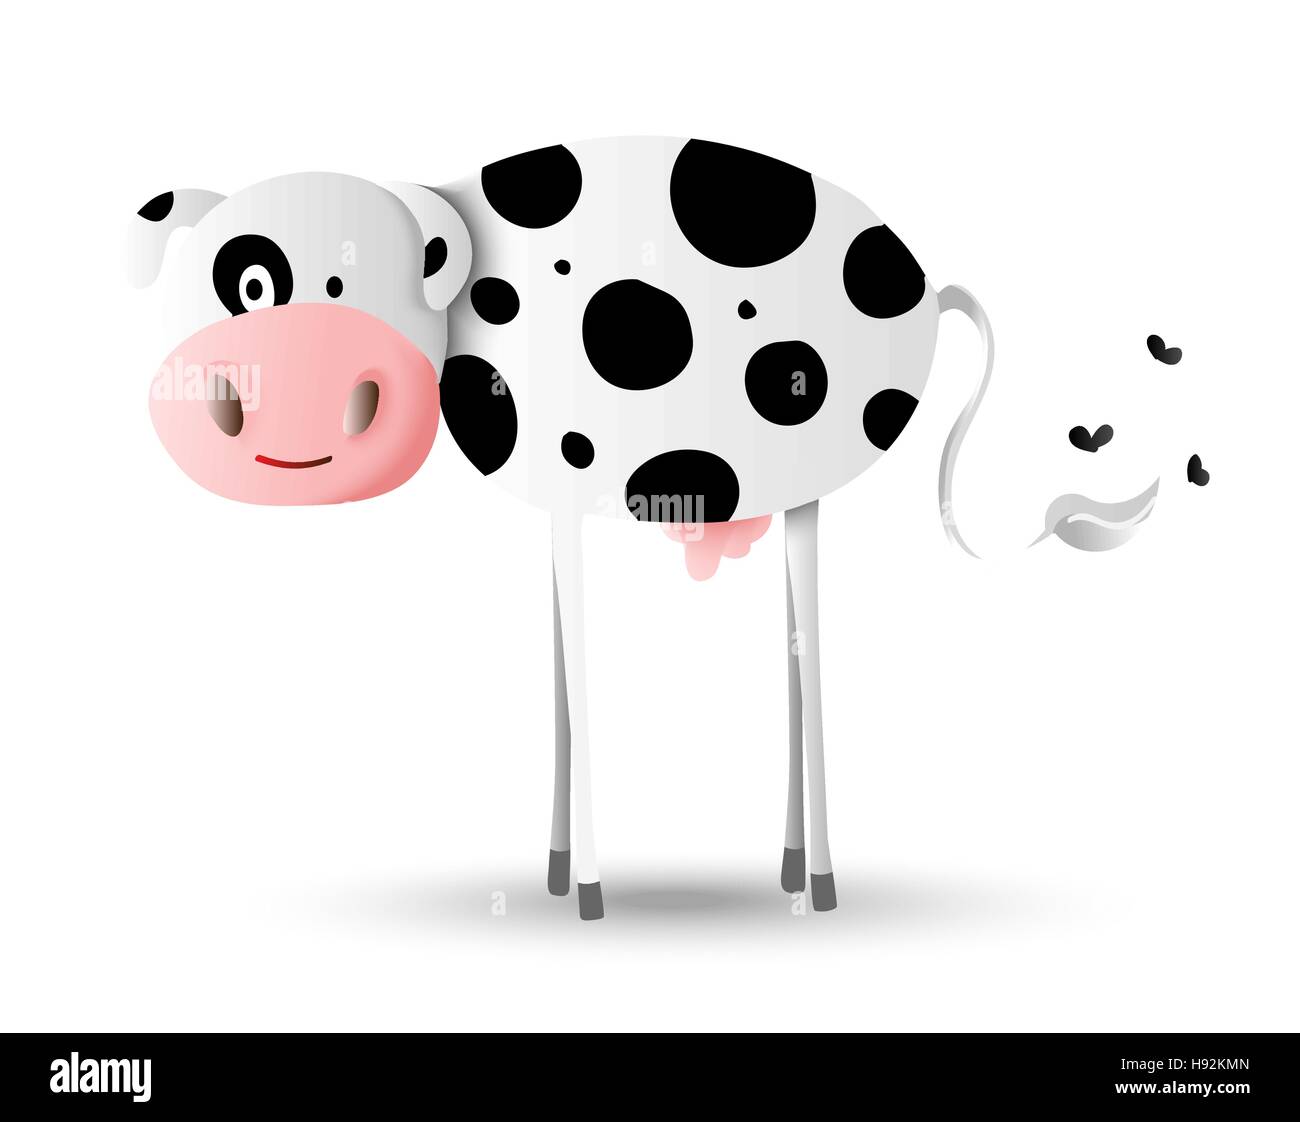 Niedlichen Bauernhof Tier Cartoon Illustration, glücklichen Holstein Kuh mit schwarzen Flecken. Ideal für Kinder oder Bildung Projekte. EPS10 Vektor. Stock Vektor